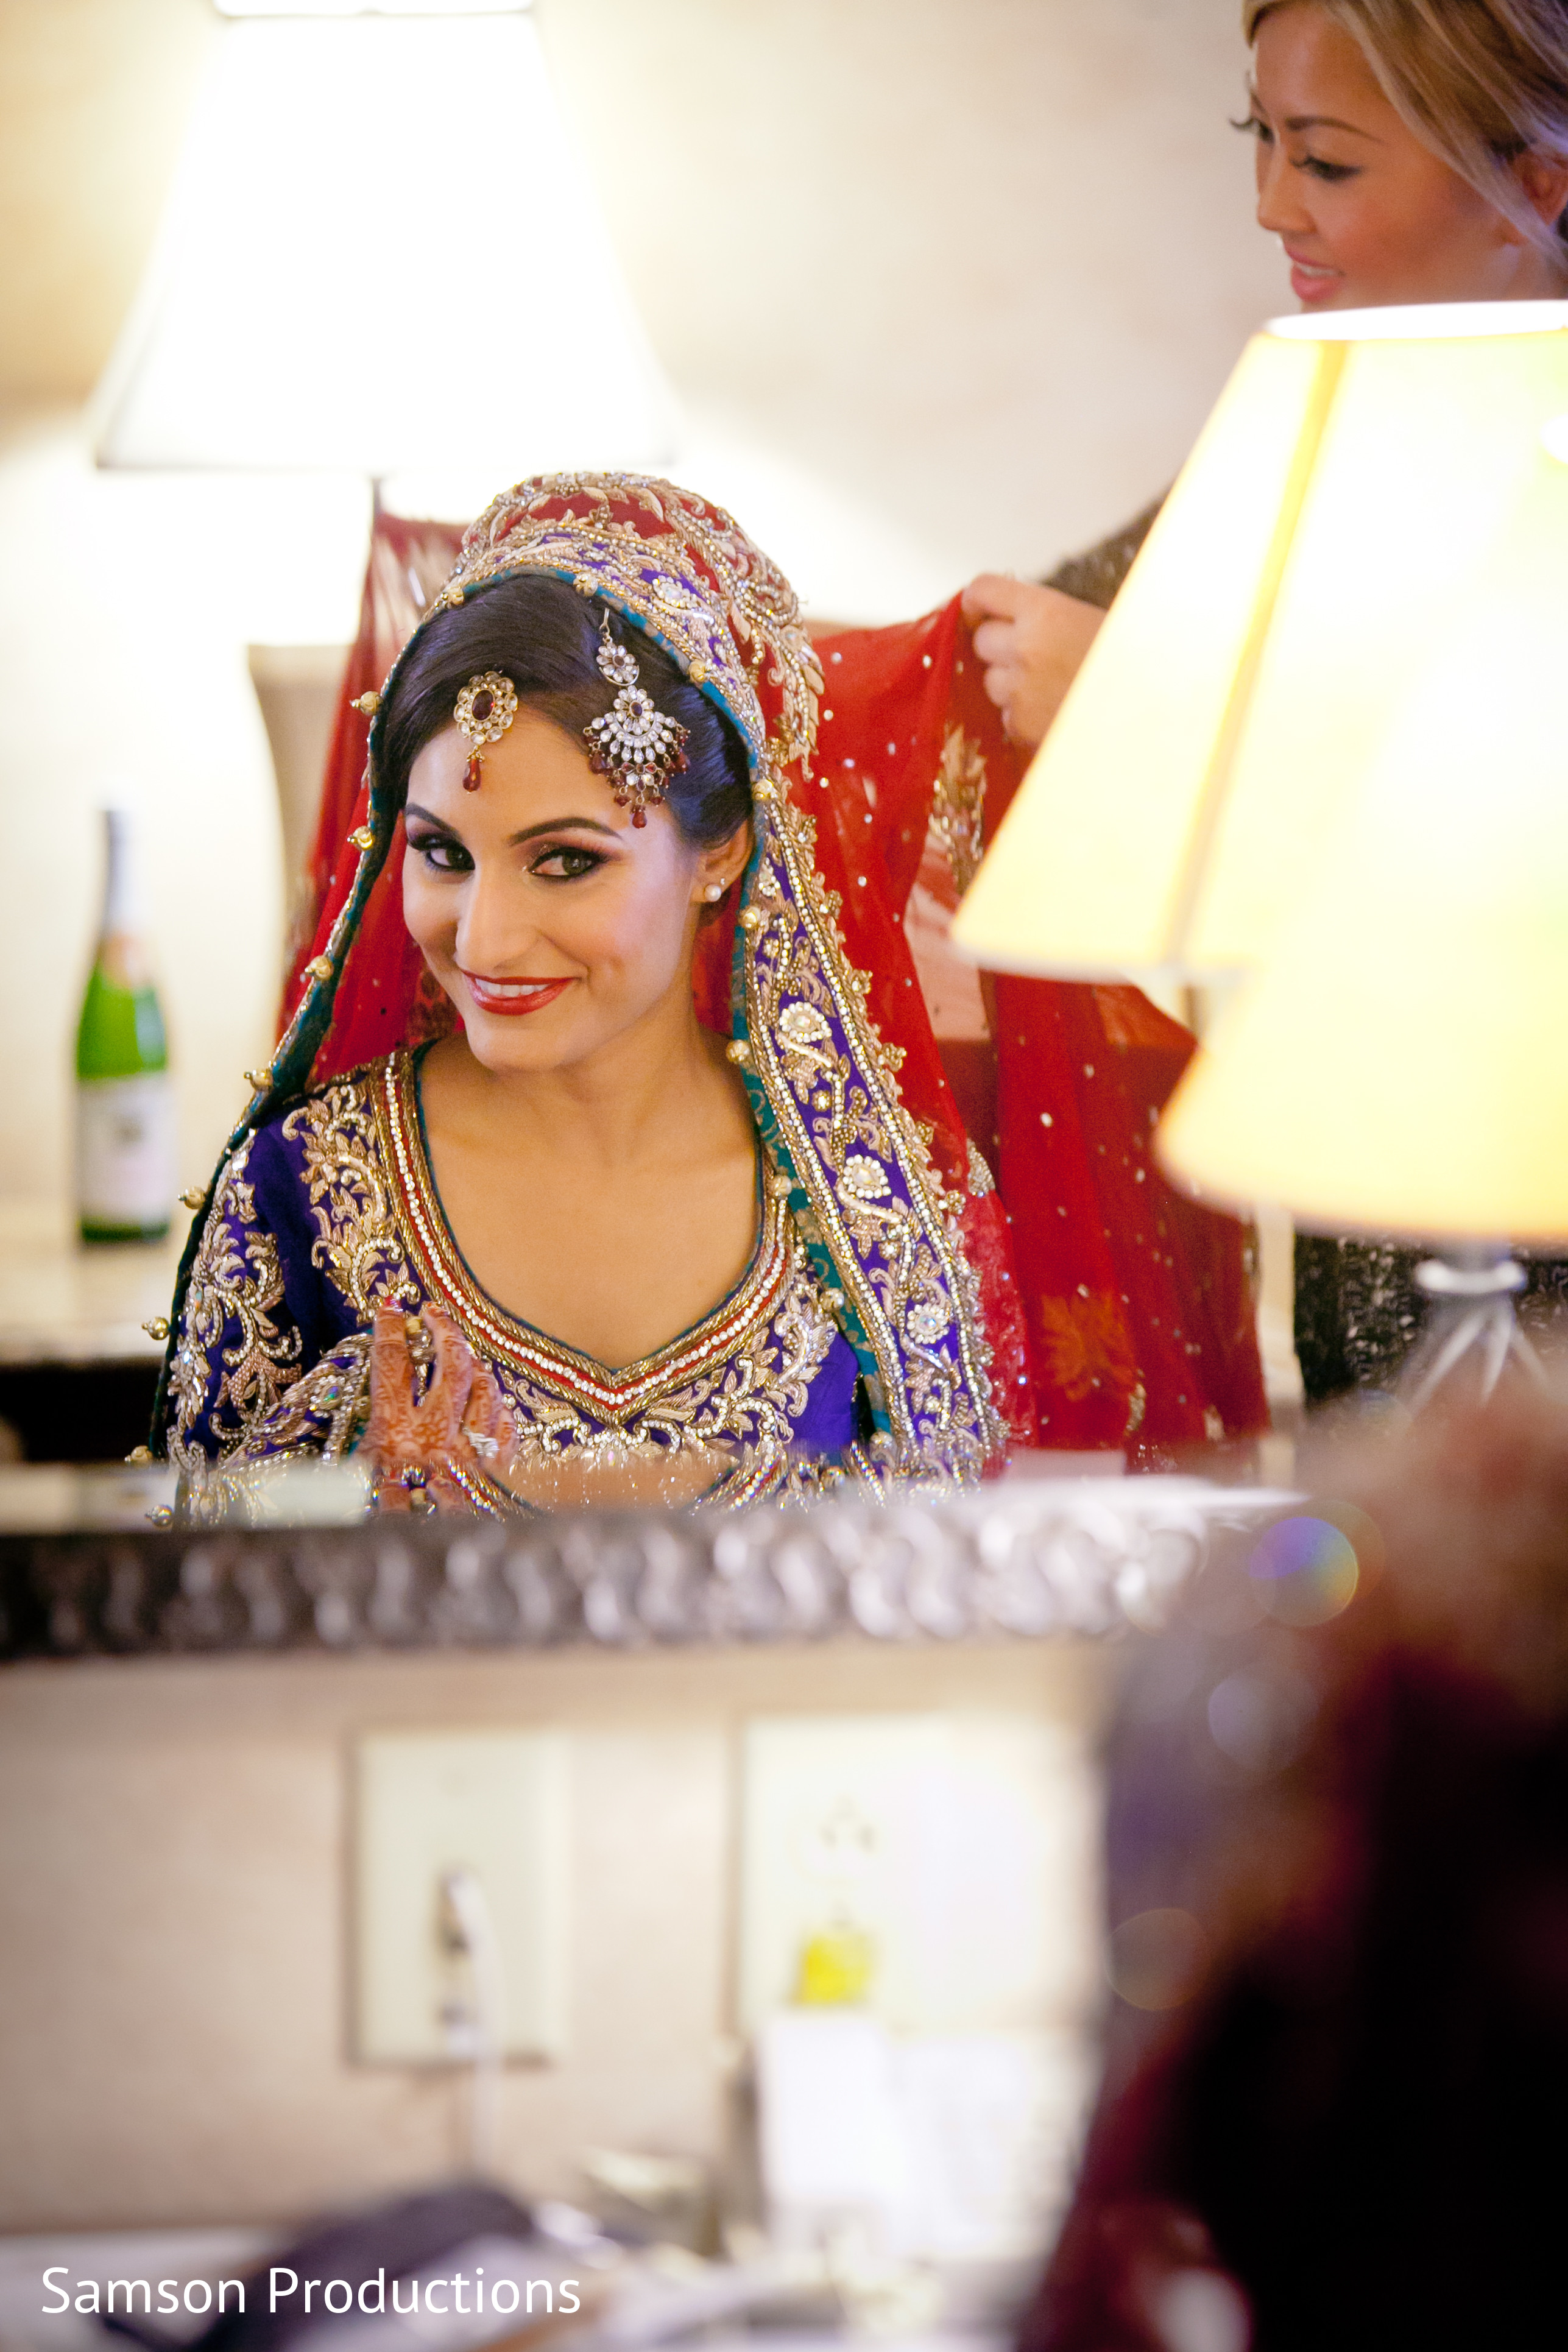 Pakistani groom photobombs wife in adorable wedding shoot